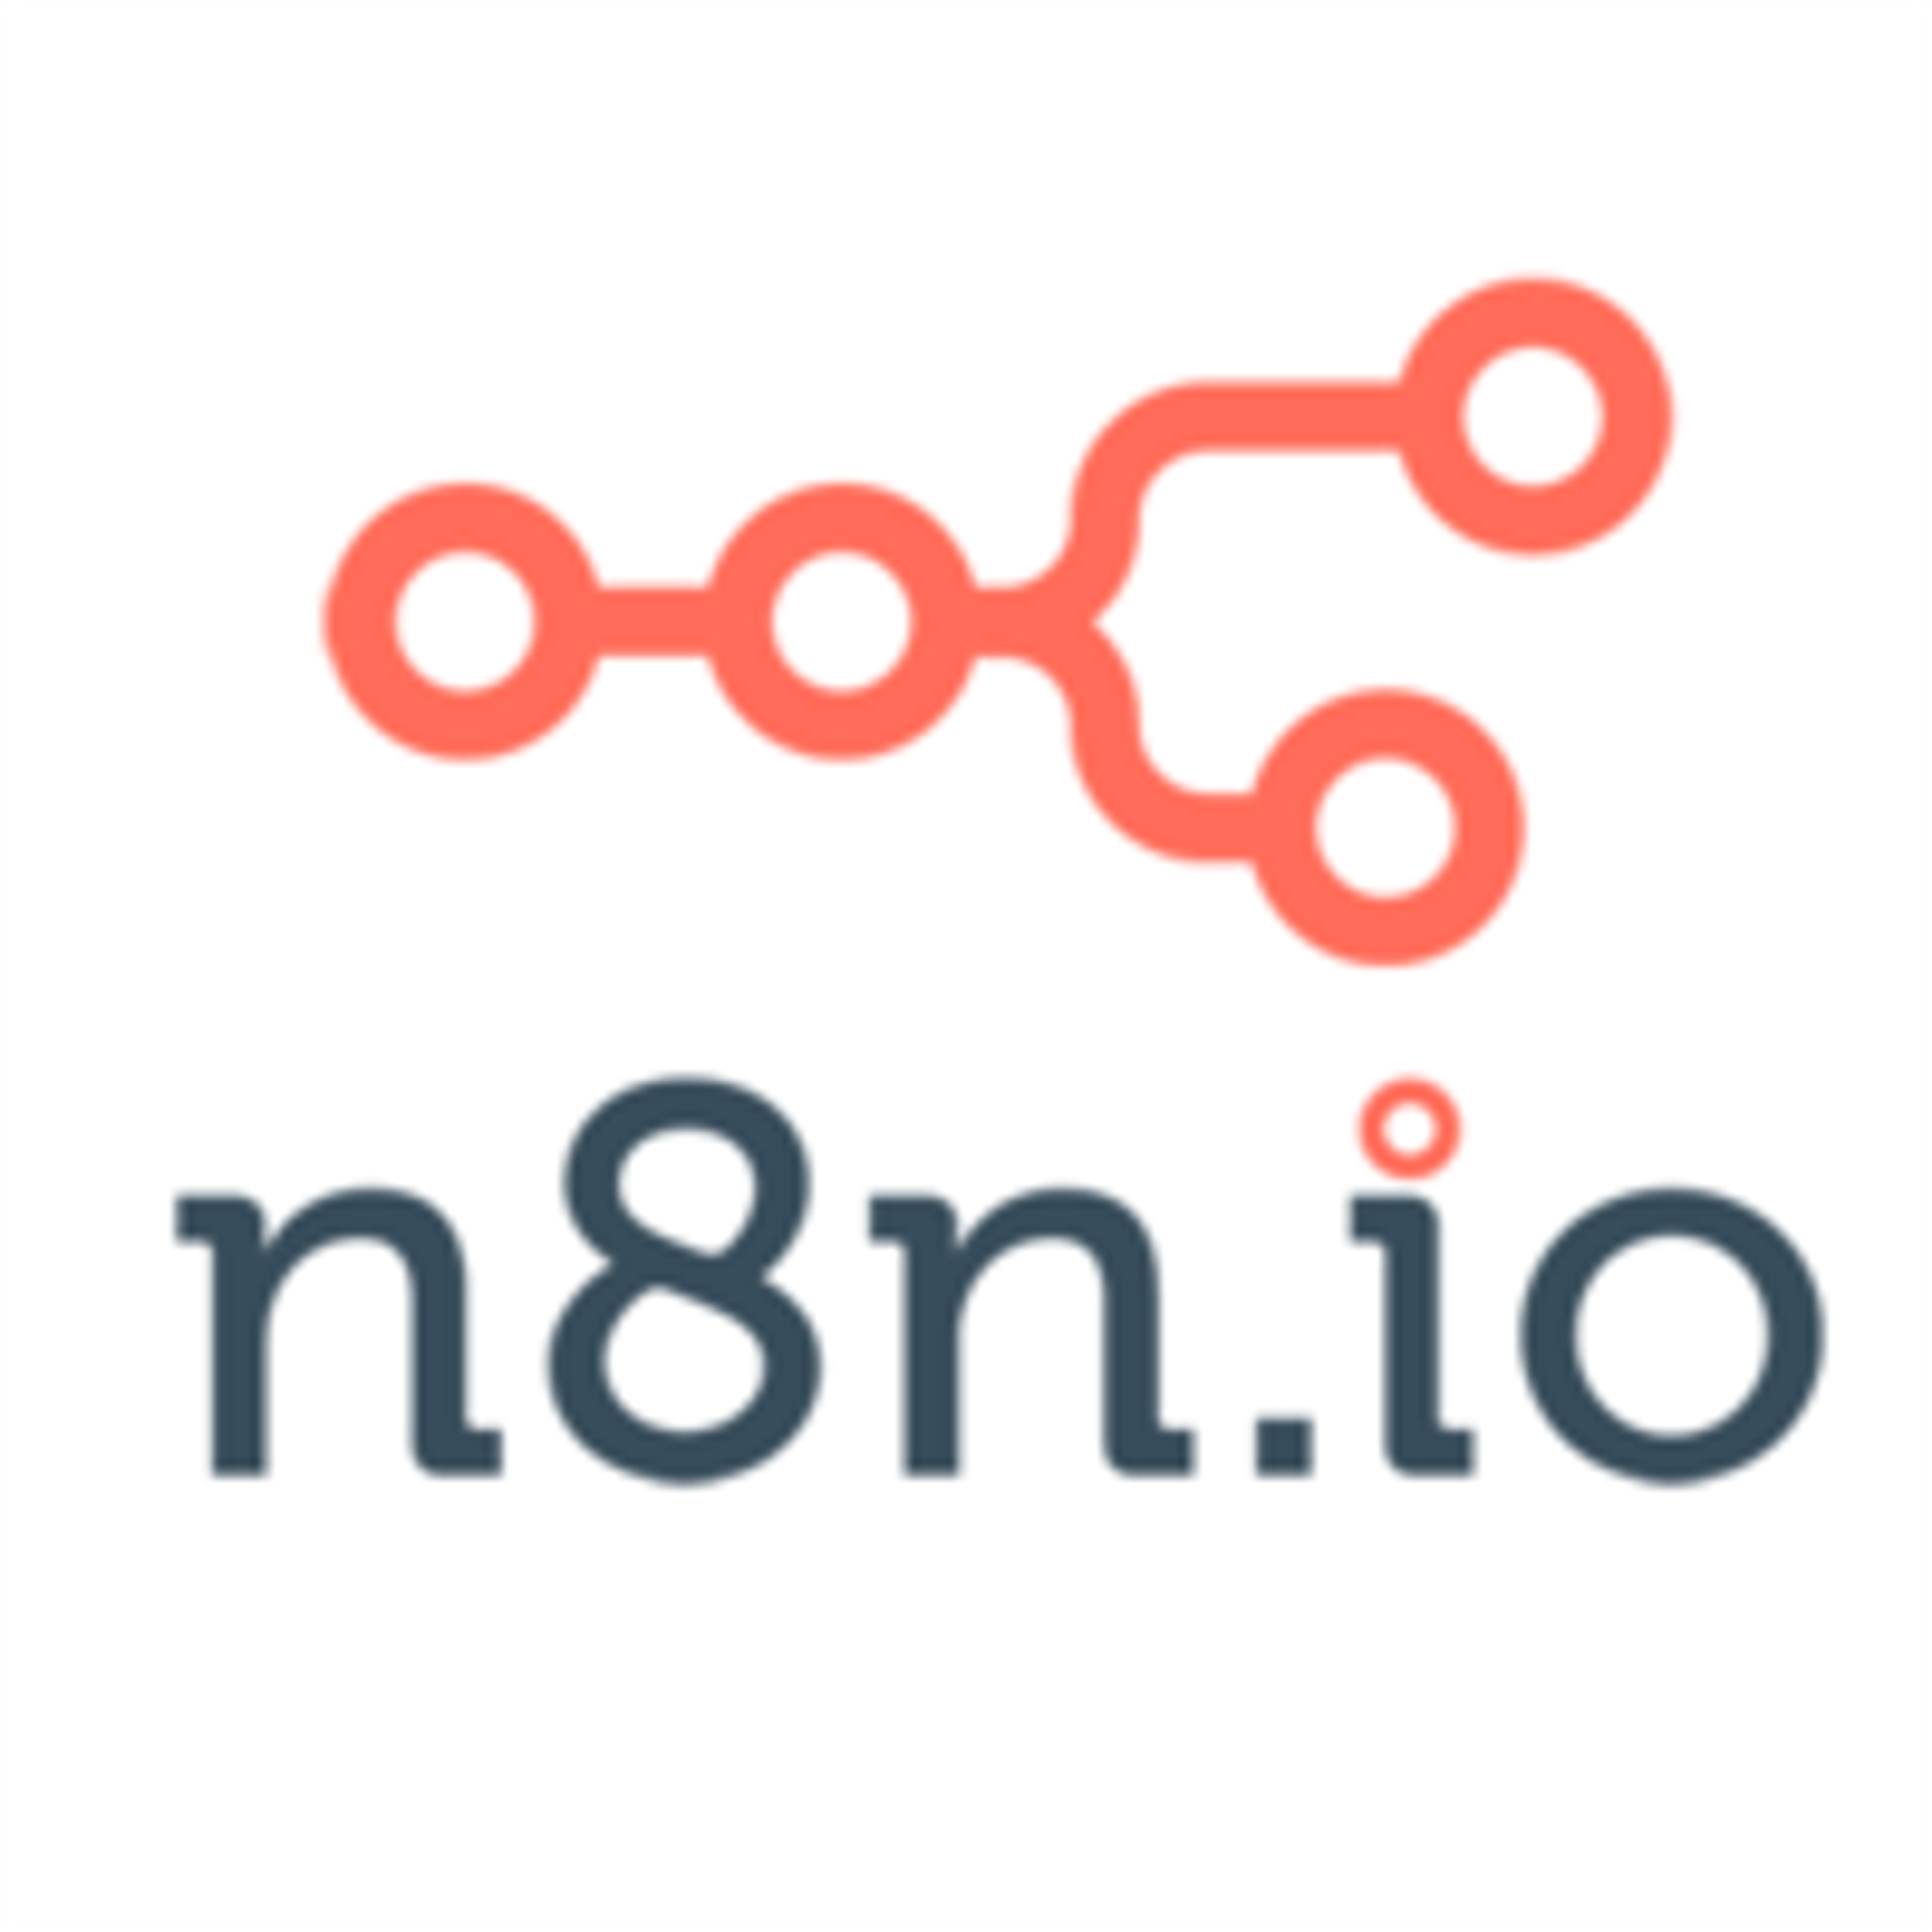 Comunidad N8N
Comunidad de n8n.io en Español